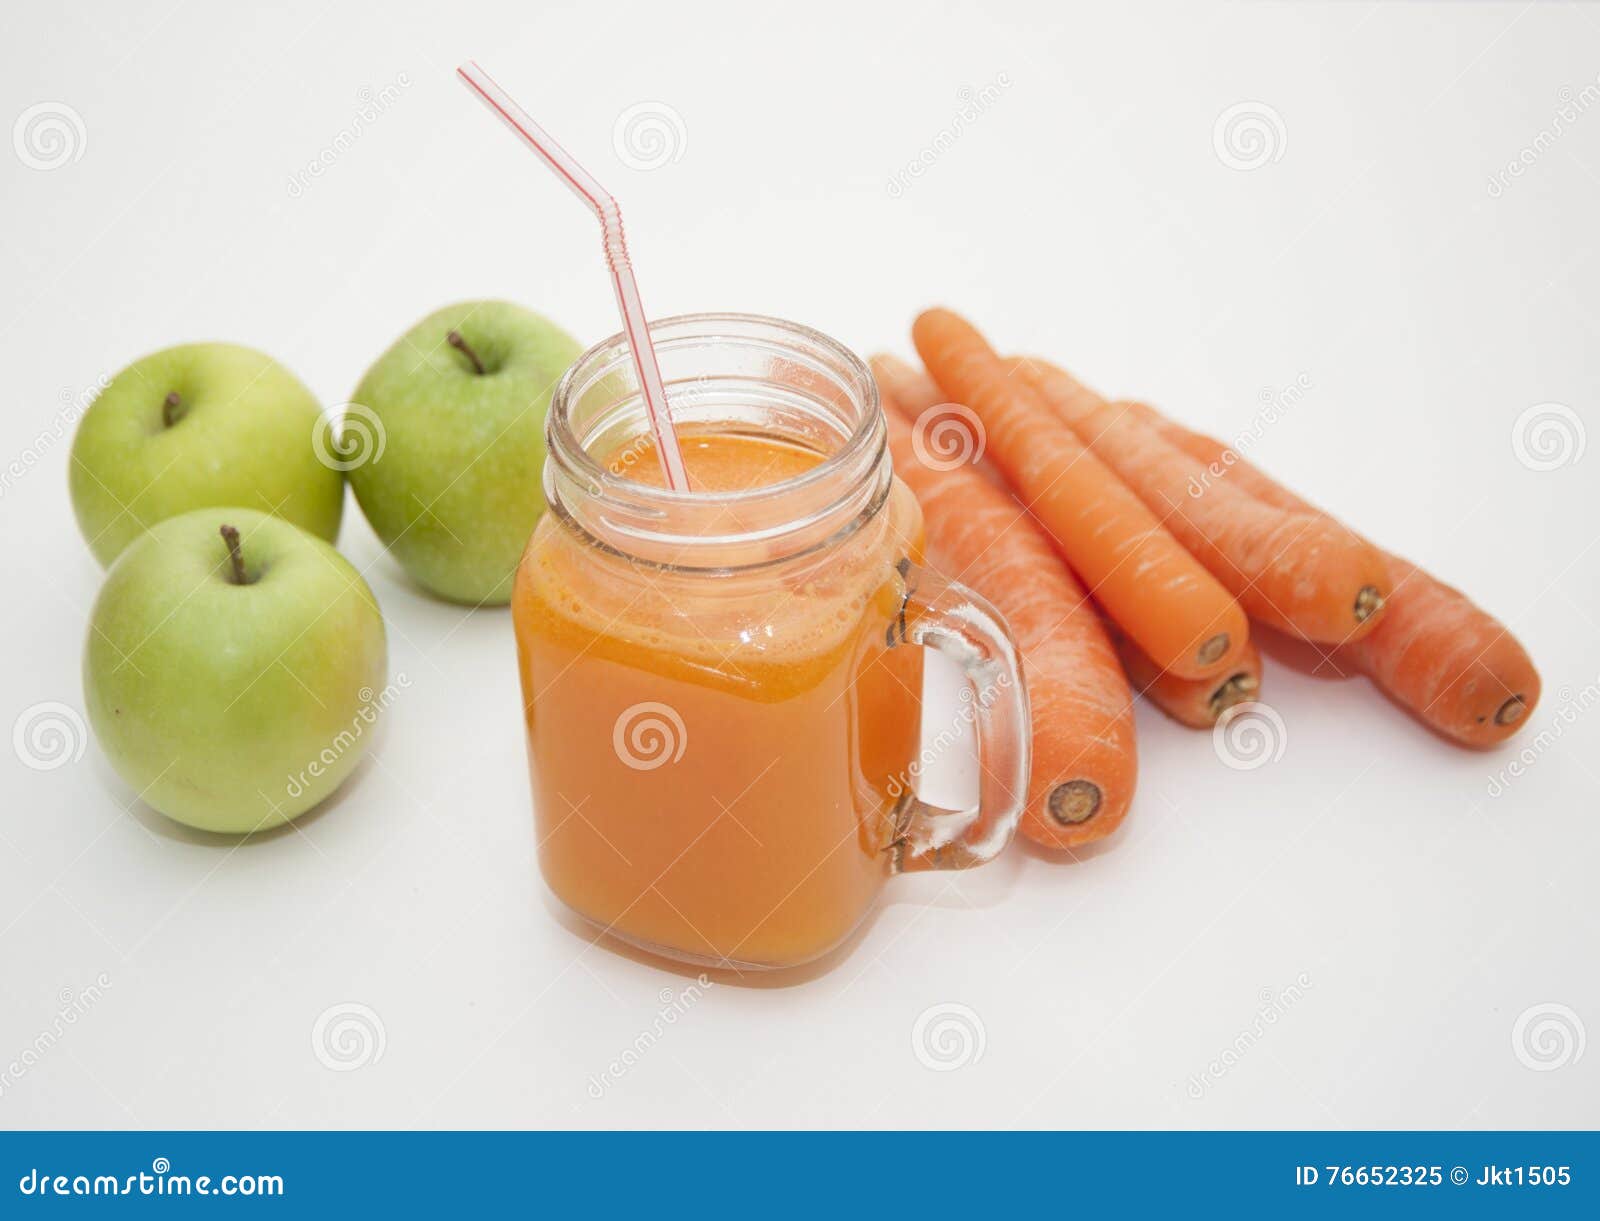 胡萝卜苹果汁怎么做_胡萝卜苹果汁的做法_海霞食记_豆果美食